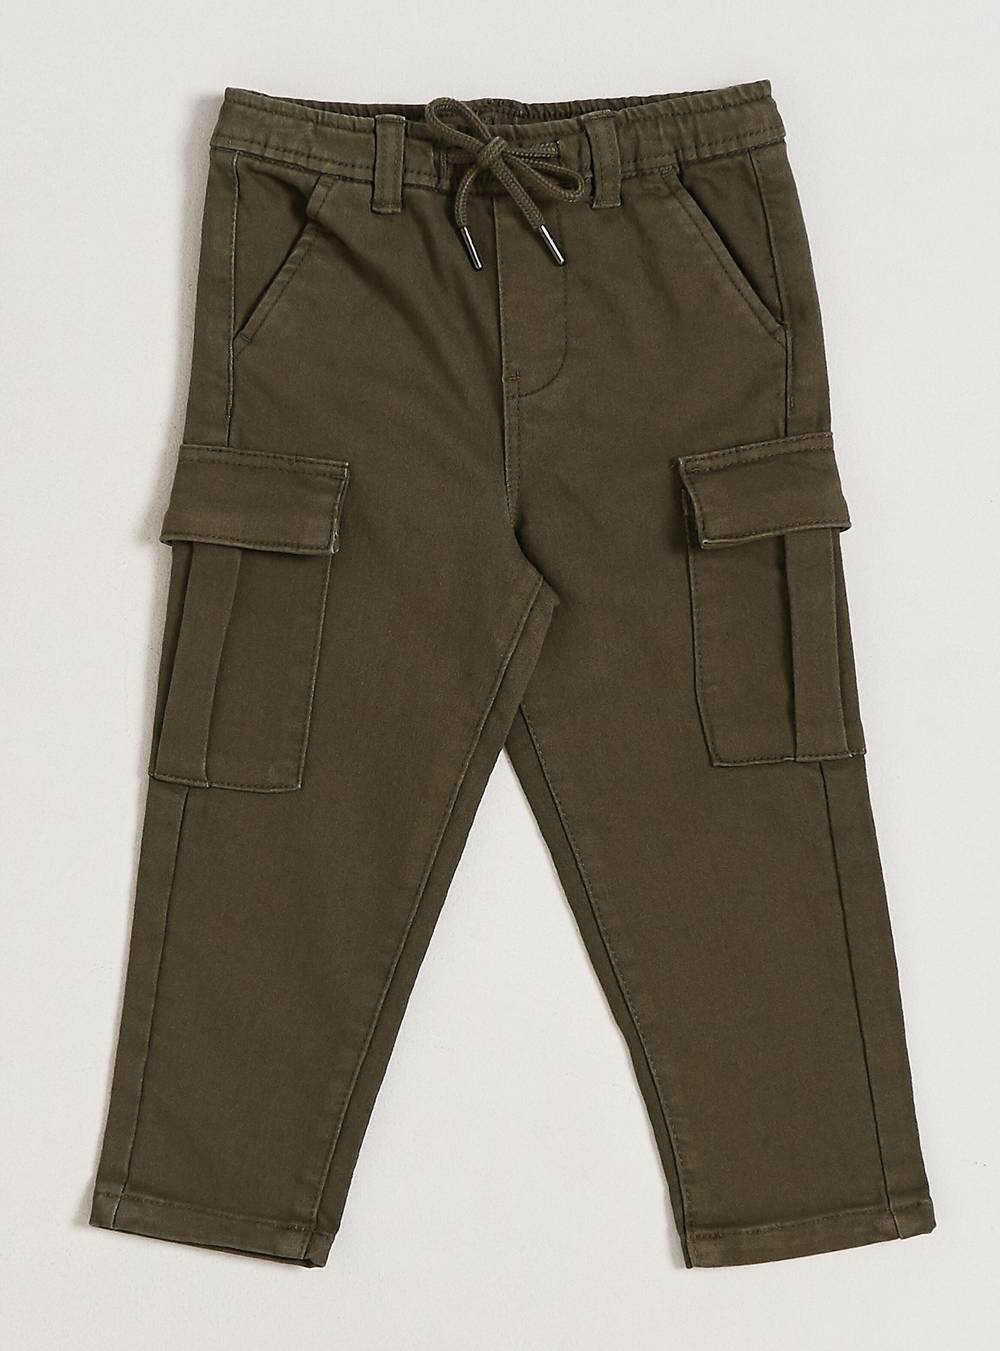 Tribu pantalón color confortable con bolsillos cargo verde olivo 't 18m